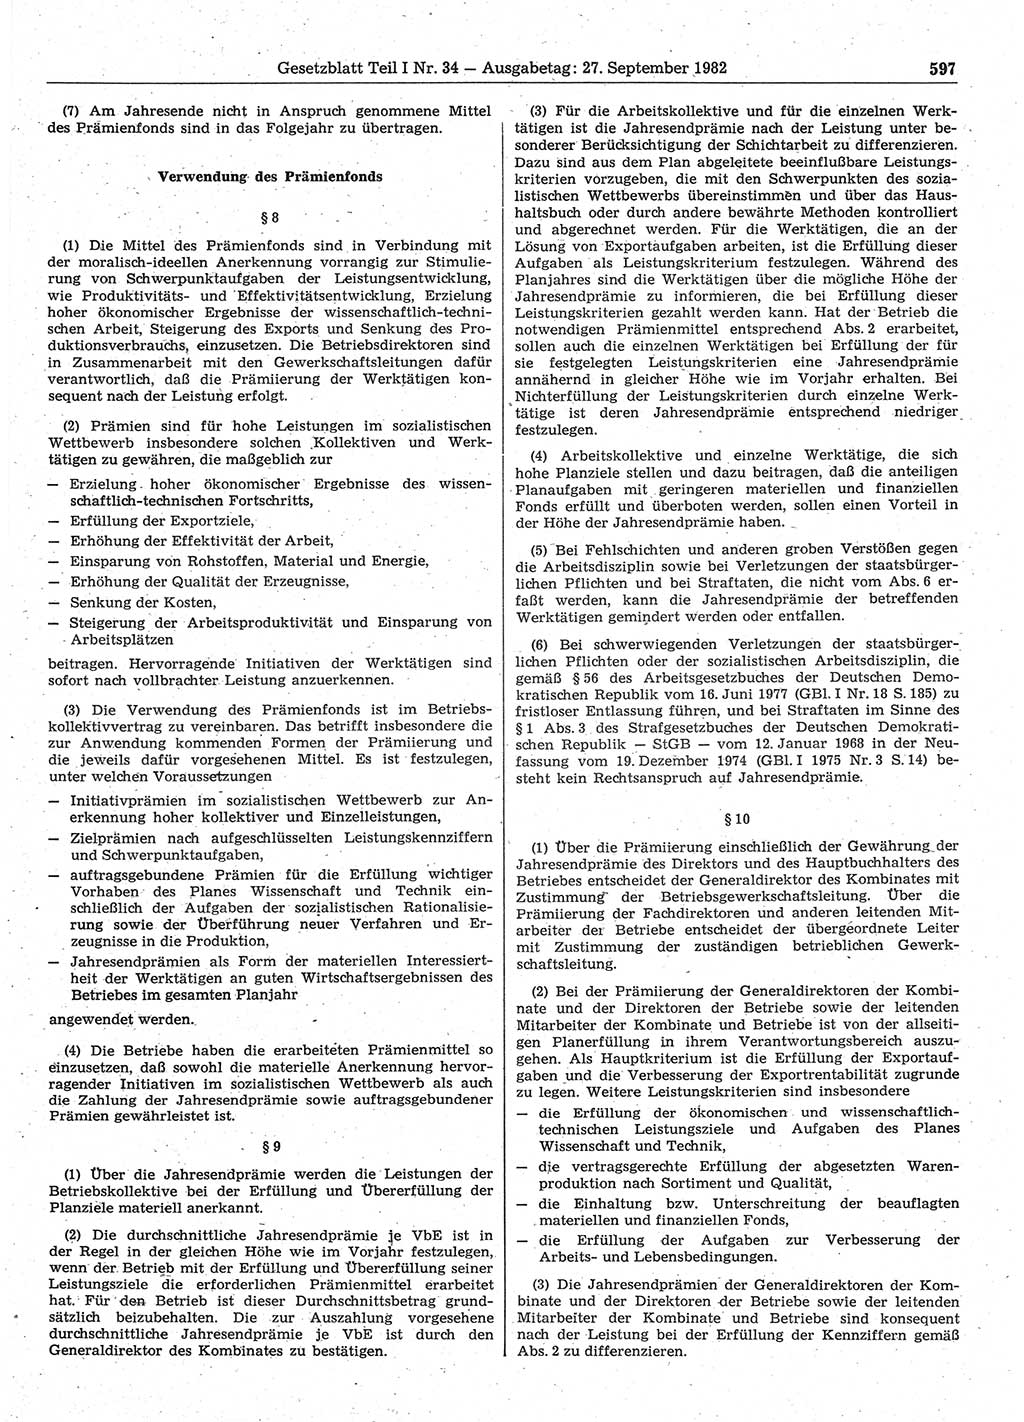 Gesetzblatt (GBl.) der Deutschen Demokratischen Republik (DDR) Teil Ⅰ 1982, Seite 597 (GBl. DDR Ⅰ 1982, S. 597)